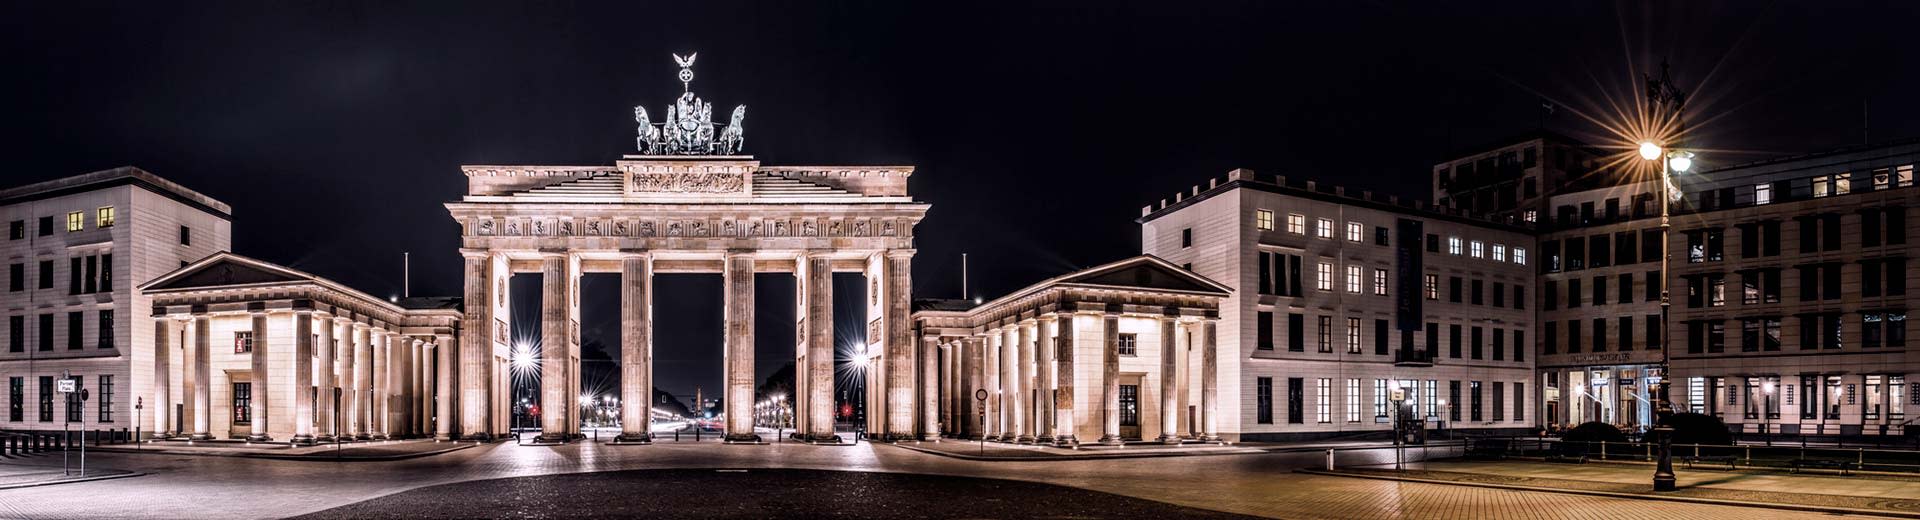 Brandenburg Gate à Berlin la nuit, avec les lumières illuminant la structure.